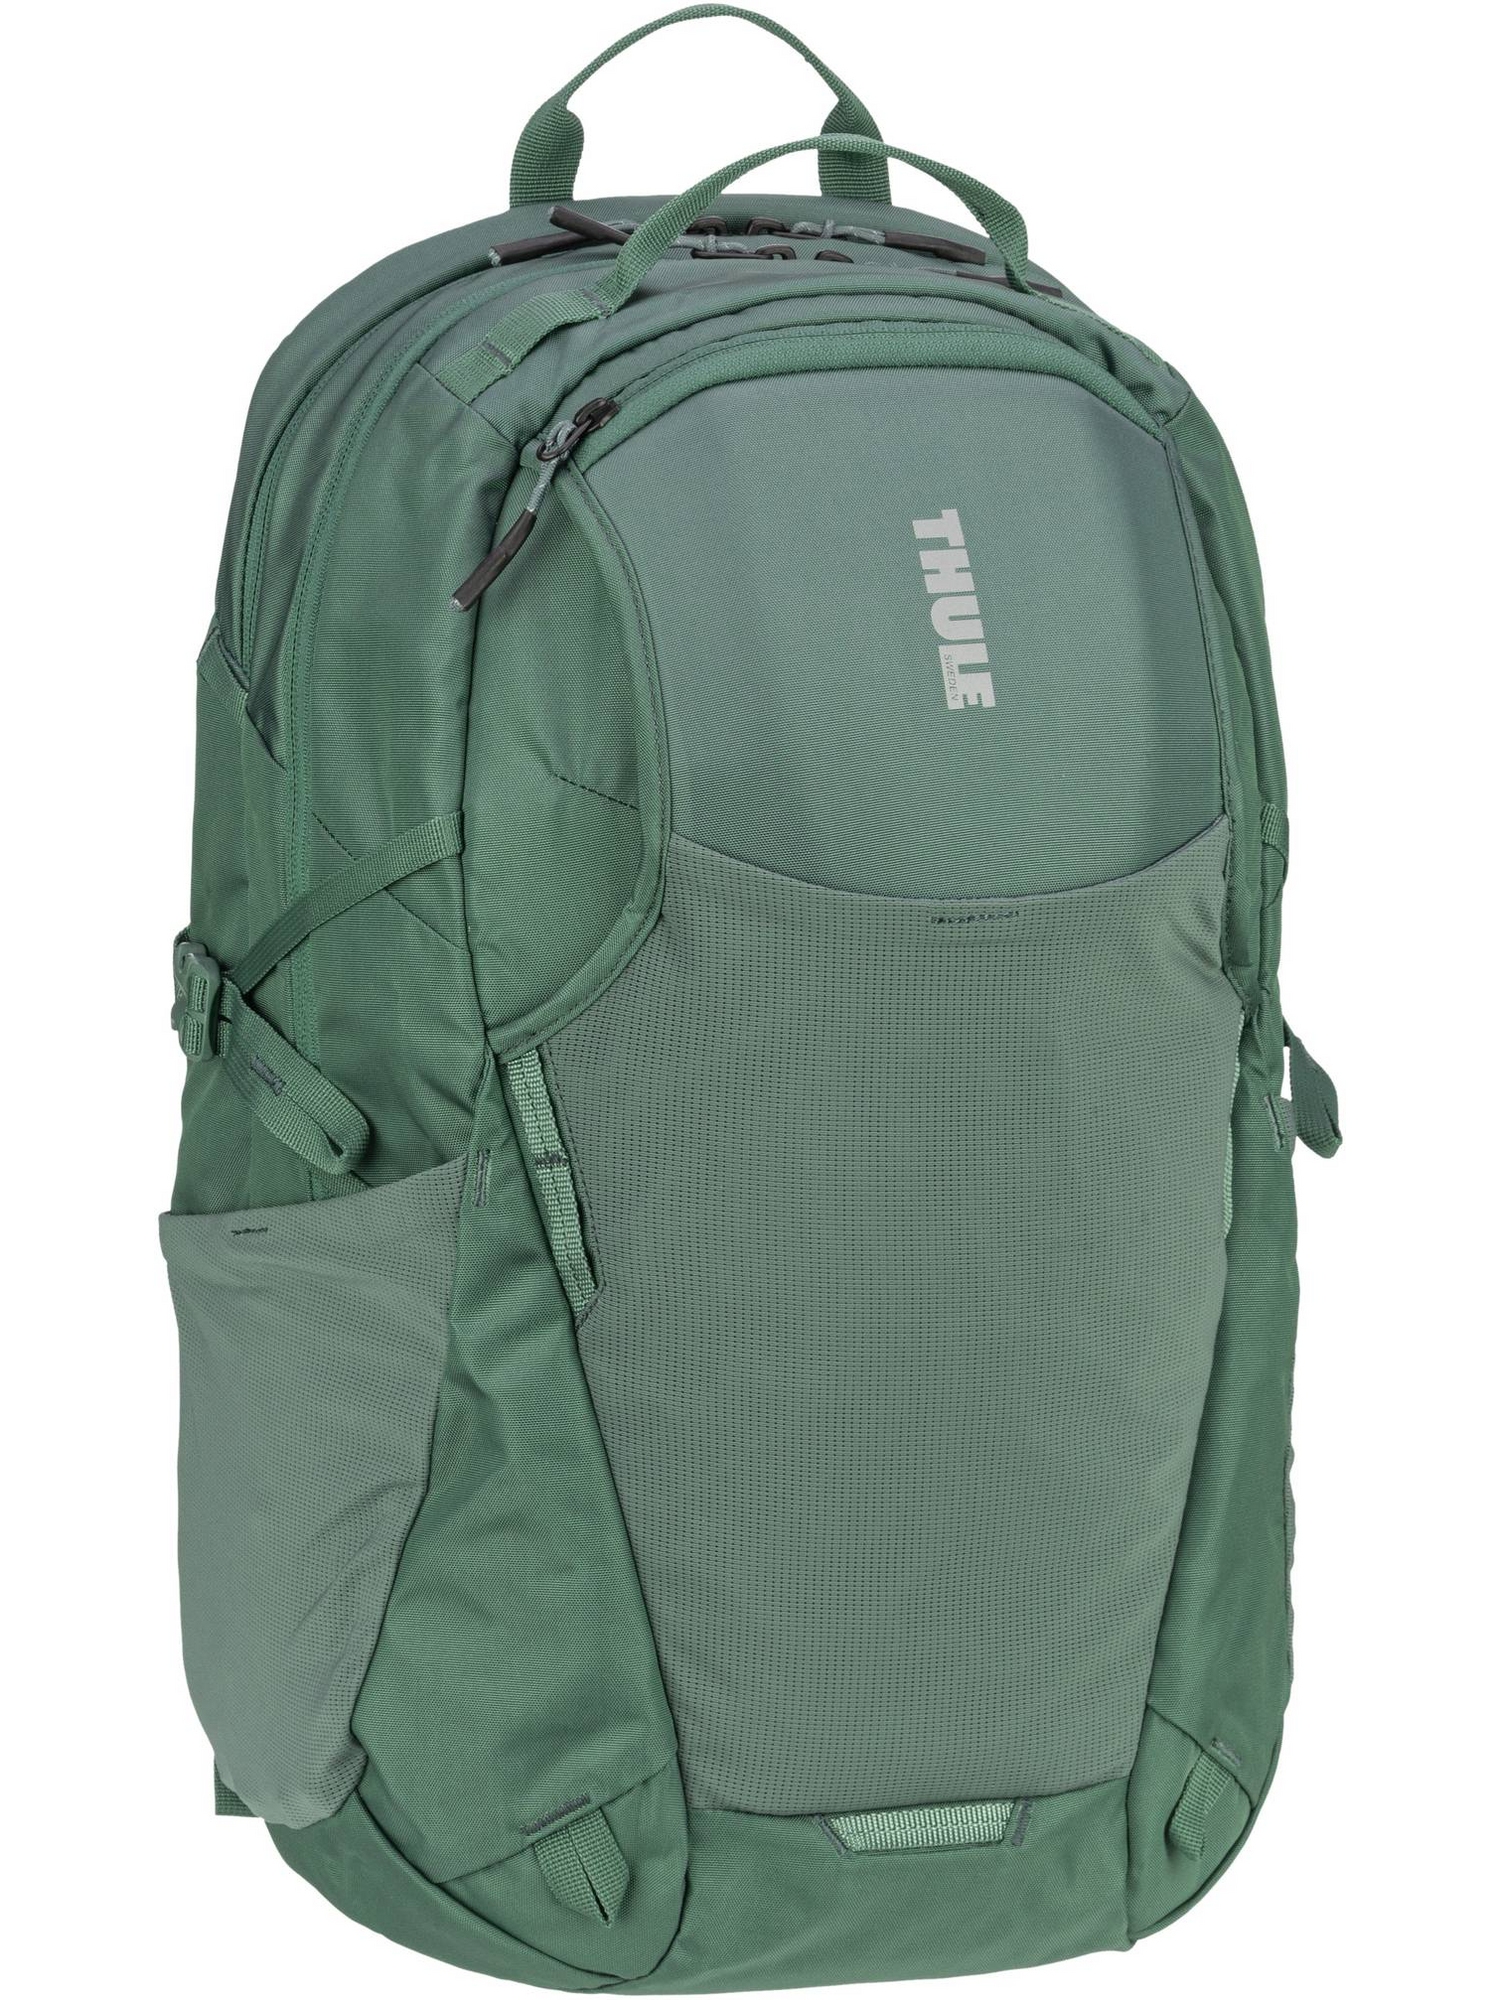 Рюкзак Thule/Backpack EnRoute Backpack 26L, цвет Mallard Green рюкзак chasm backpack 26l thule цвет poseidon